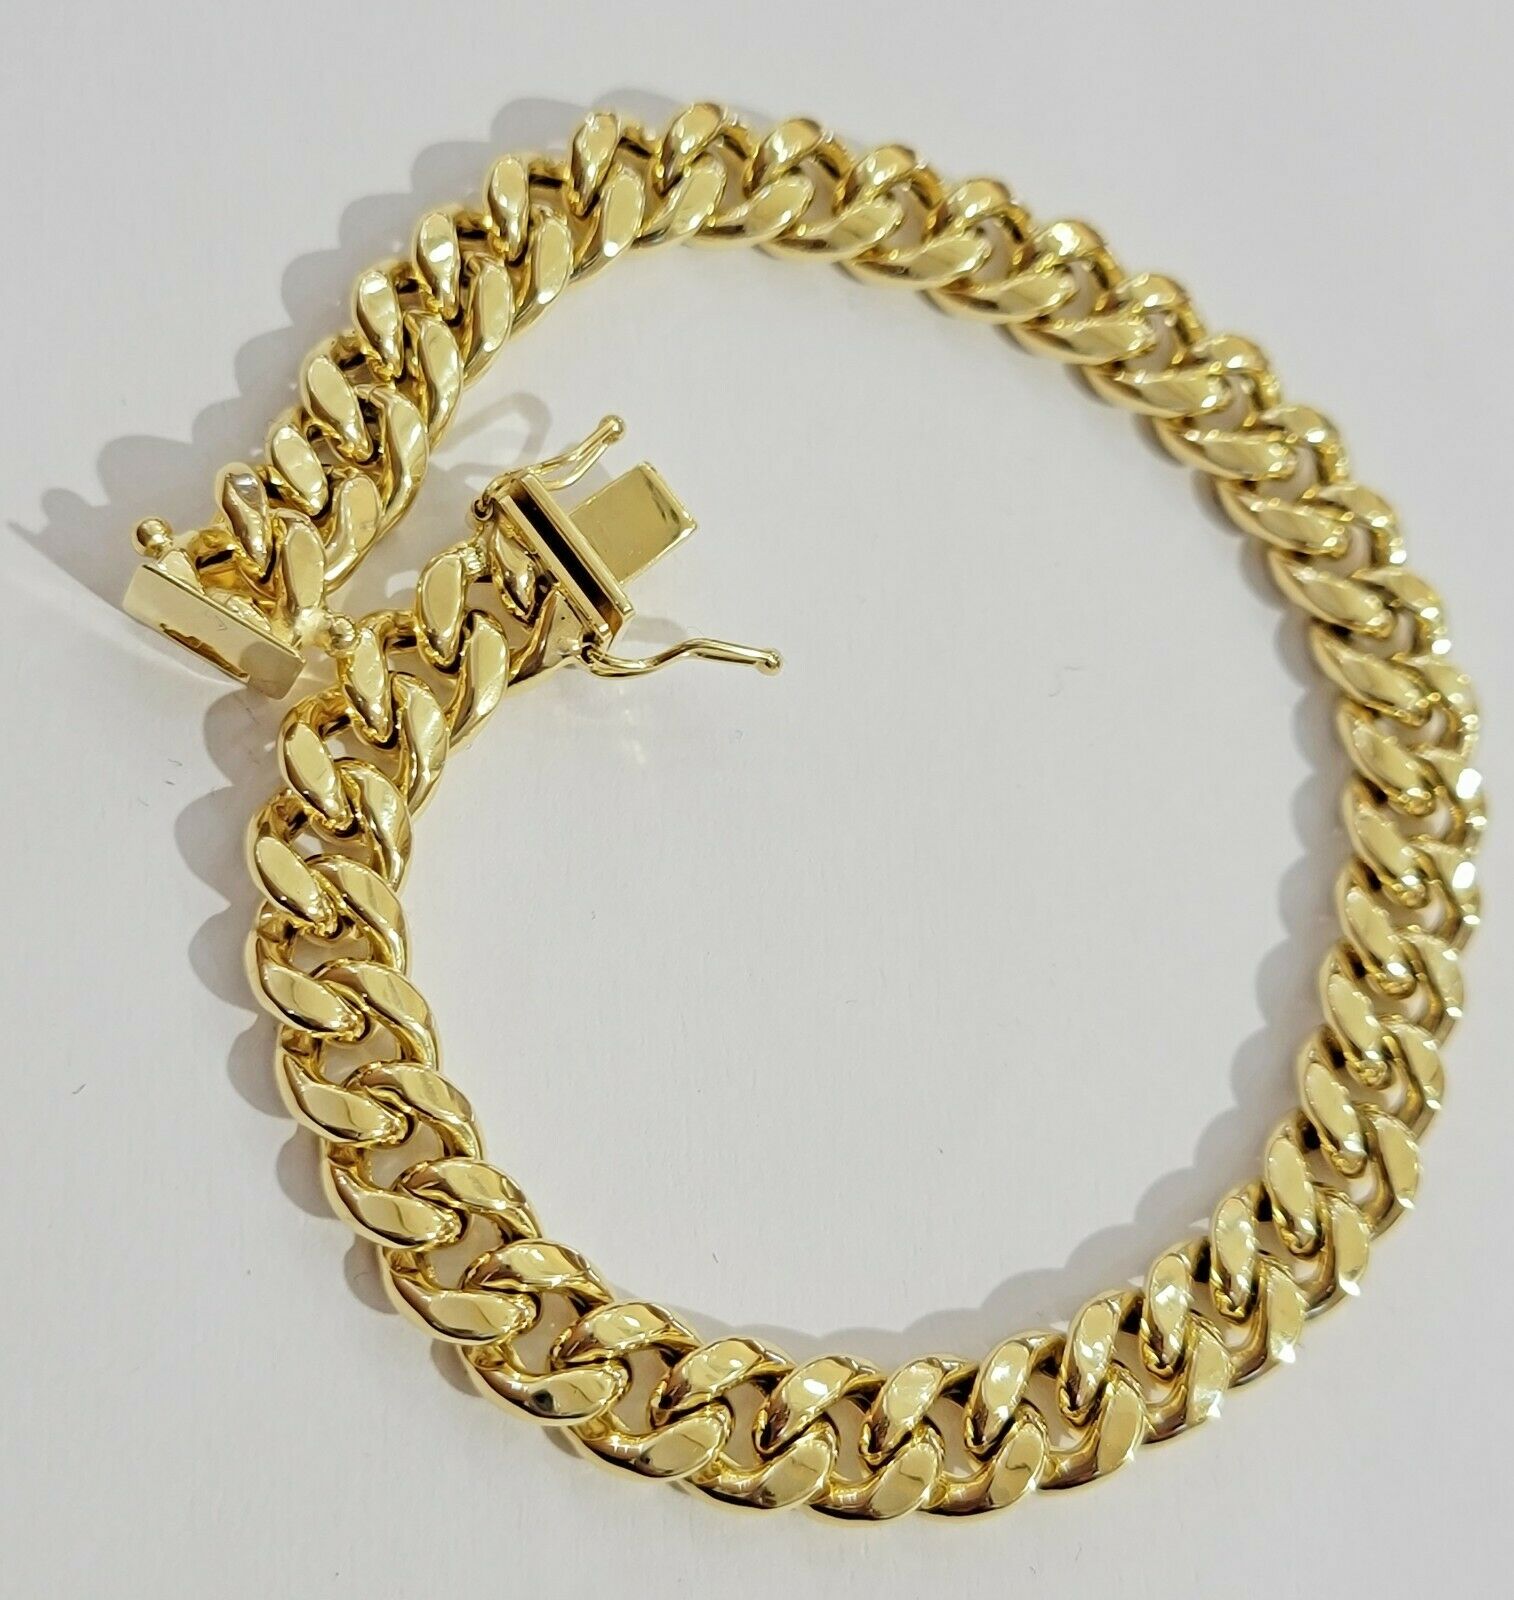 10k Gold 9mm Cuban Link Bracelet 7.5